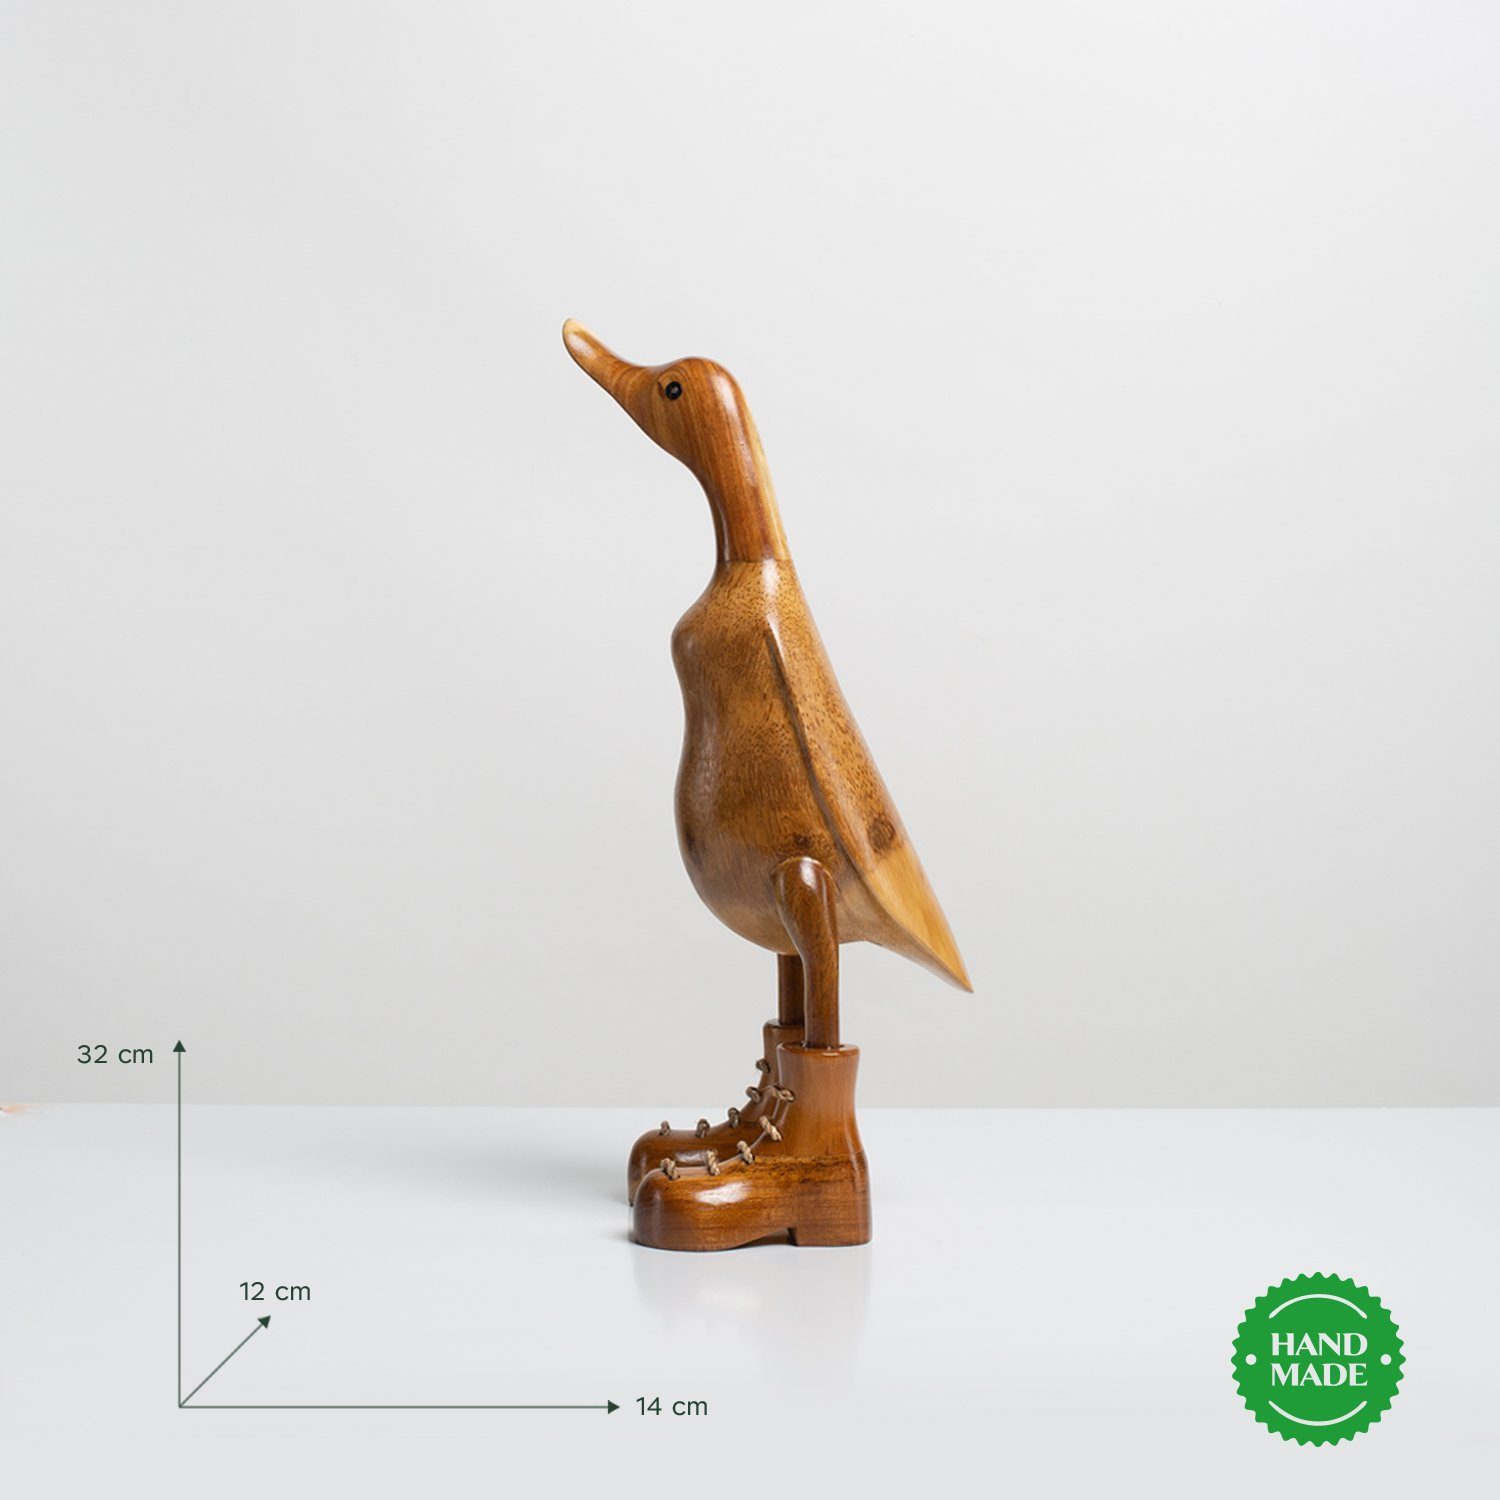 natur (3-er Dekoration 3 - Geschenk Holz Dekofigur Holzarten Handgefertigte Stiefel Ente Set), aus Rikmani Holzfigur